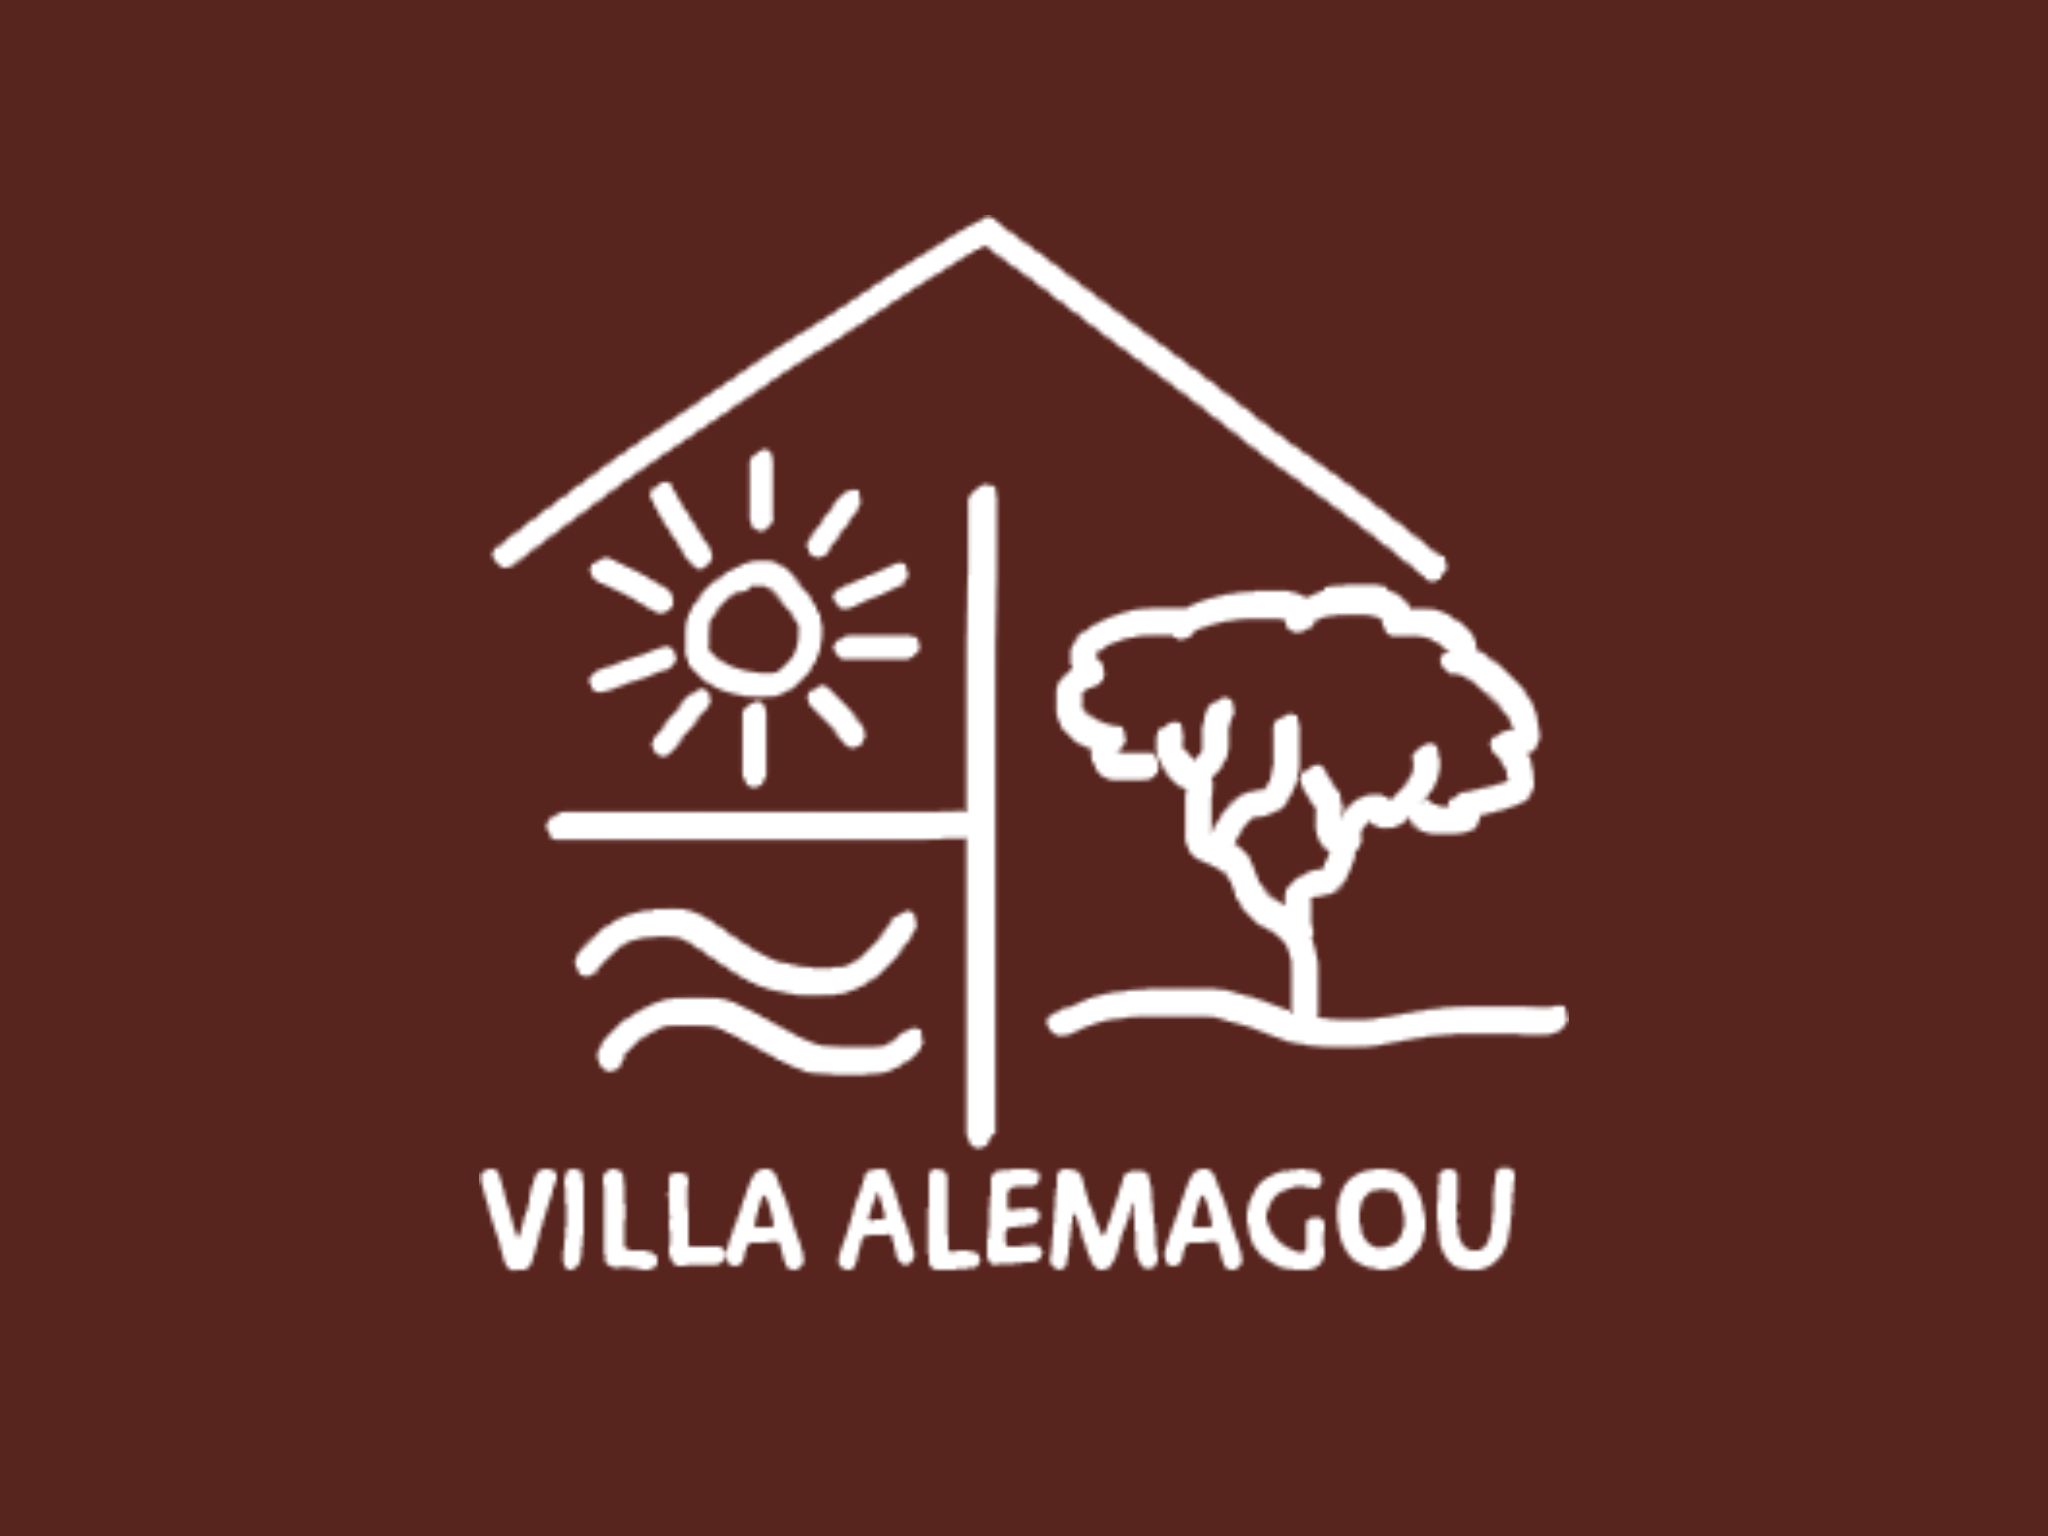  Logo Villa Alemagou 1